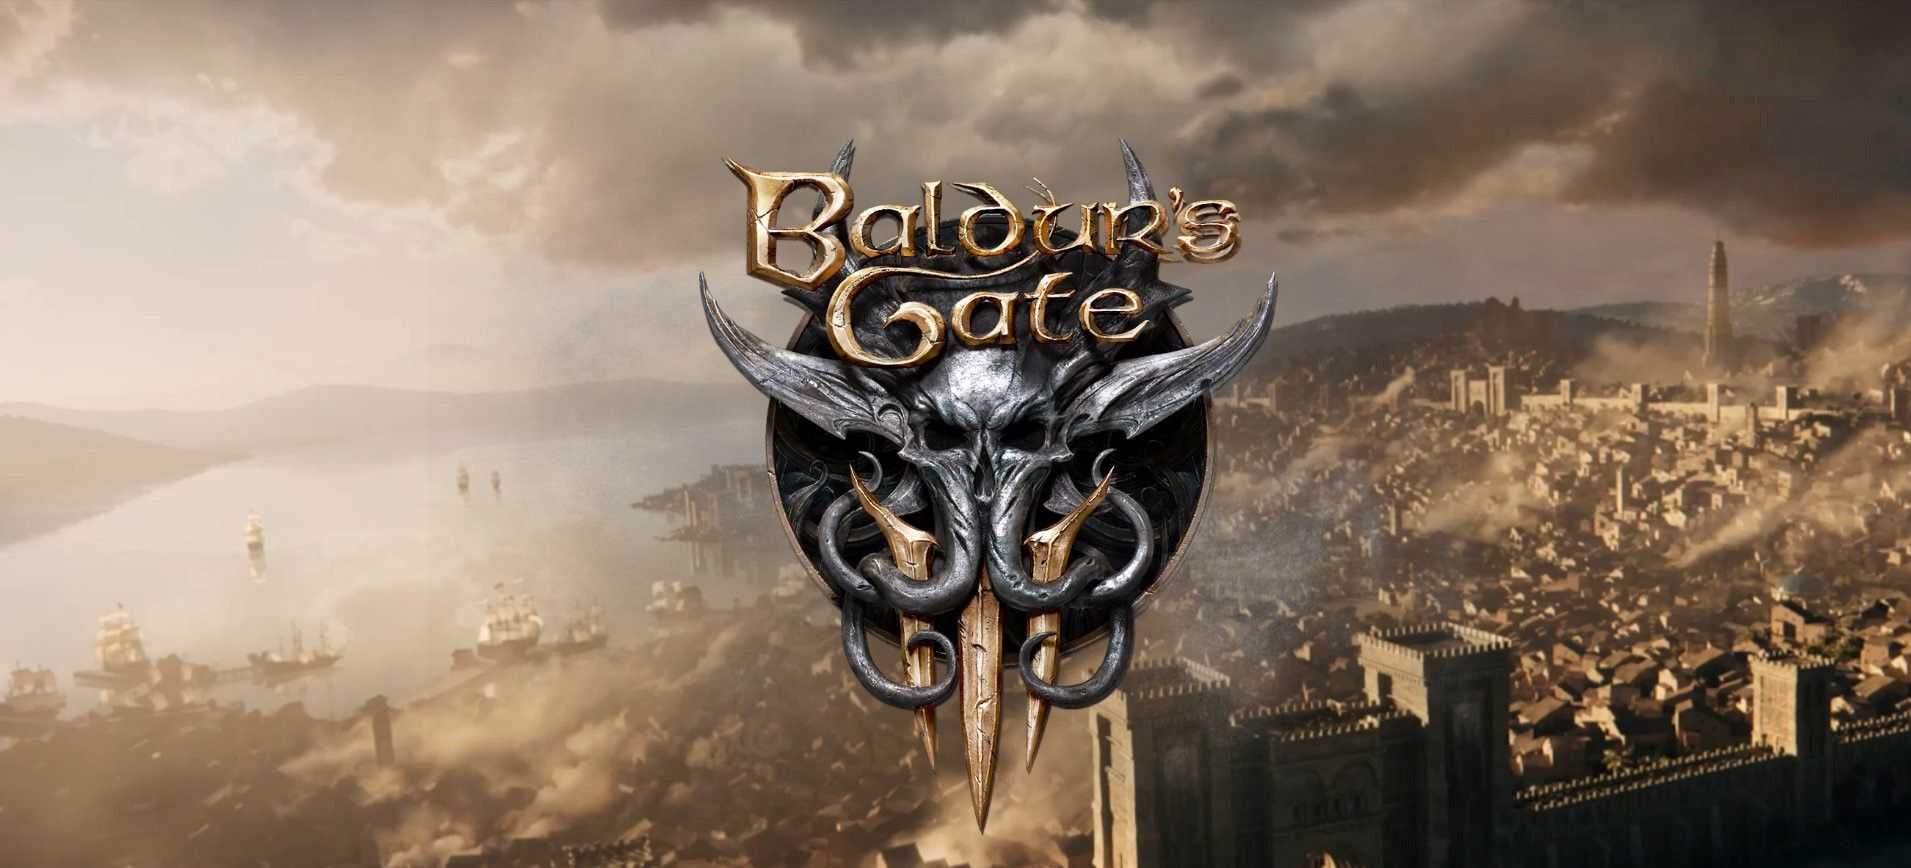 Baldur's Gate 3 Not Working Issue